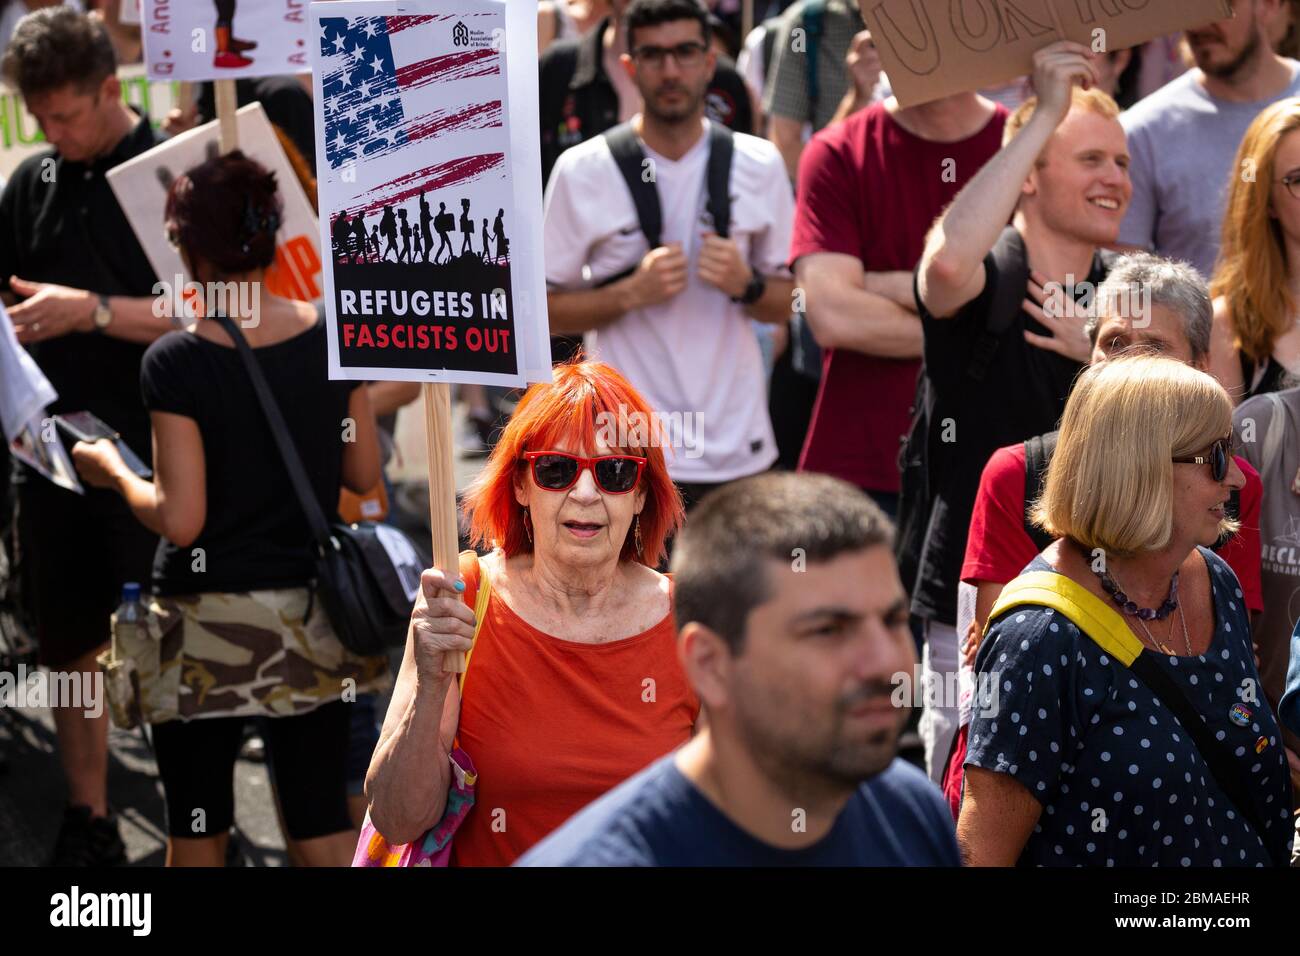 Une femme aux cheveux rouges tenant un panneau indiquant « Refugees In, Fascists Out », lors de la manifestation contre la visite de Donald Trump à Londres Banque D'Images